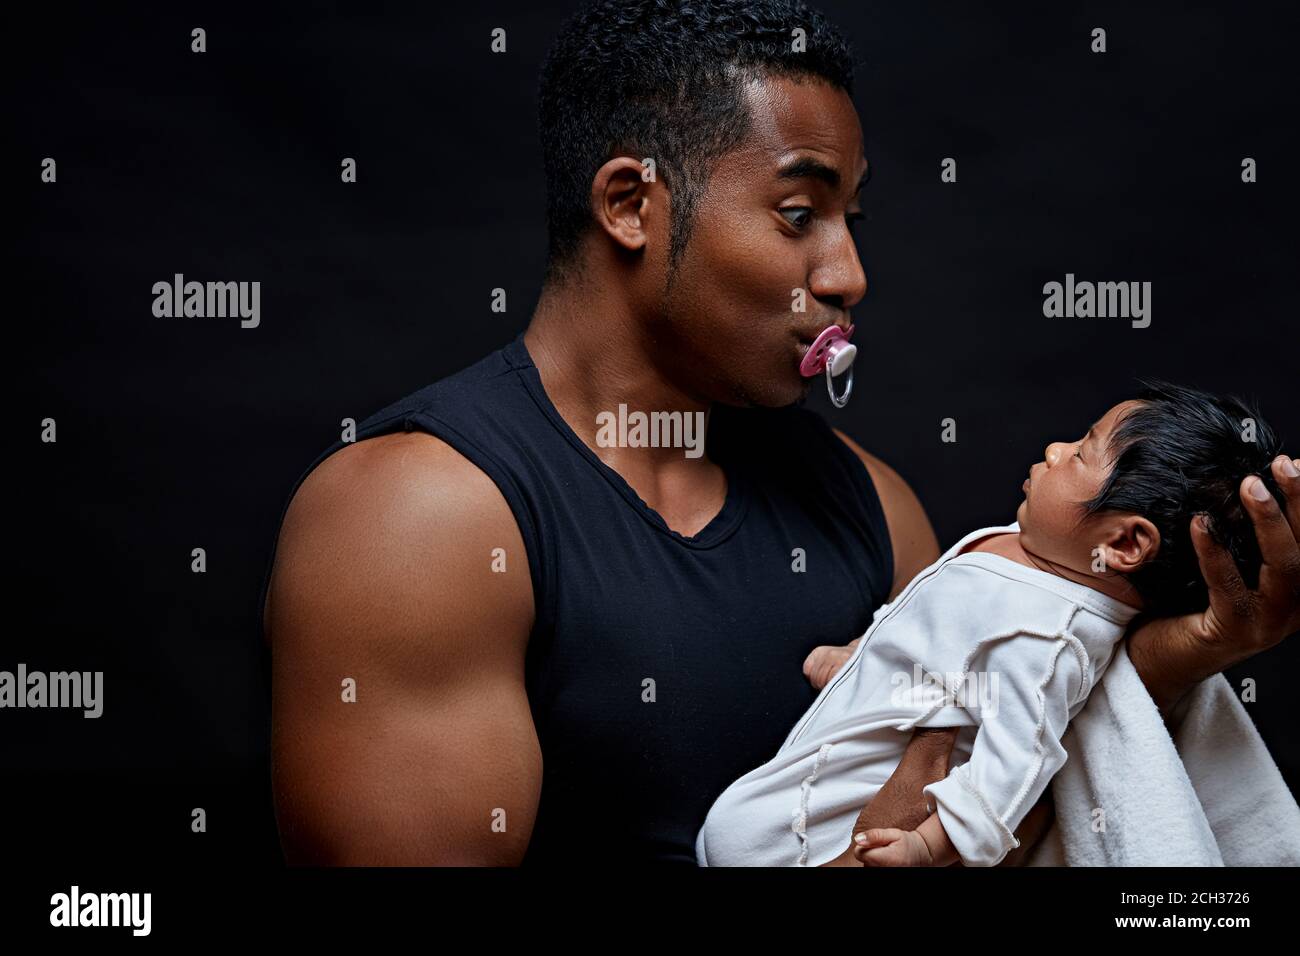 père africain essayant de faire rire son bébé. jeune père non expérimenté jouant avec son fils bébé. vue de près portrait.playful humeur Banque D'Images